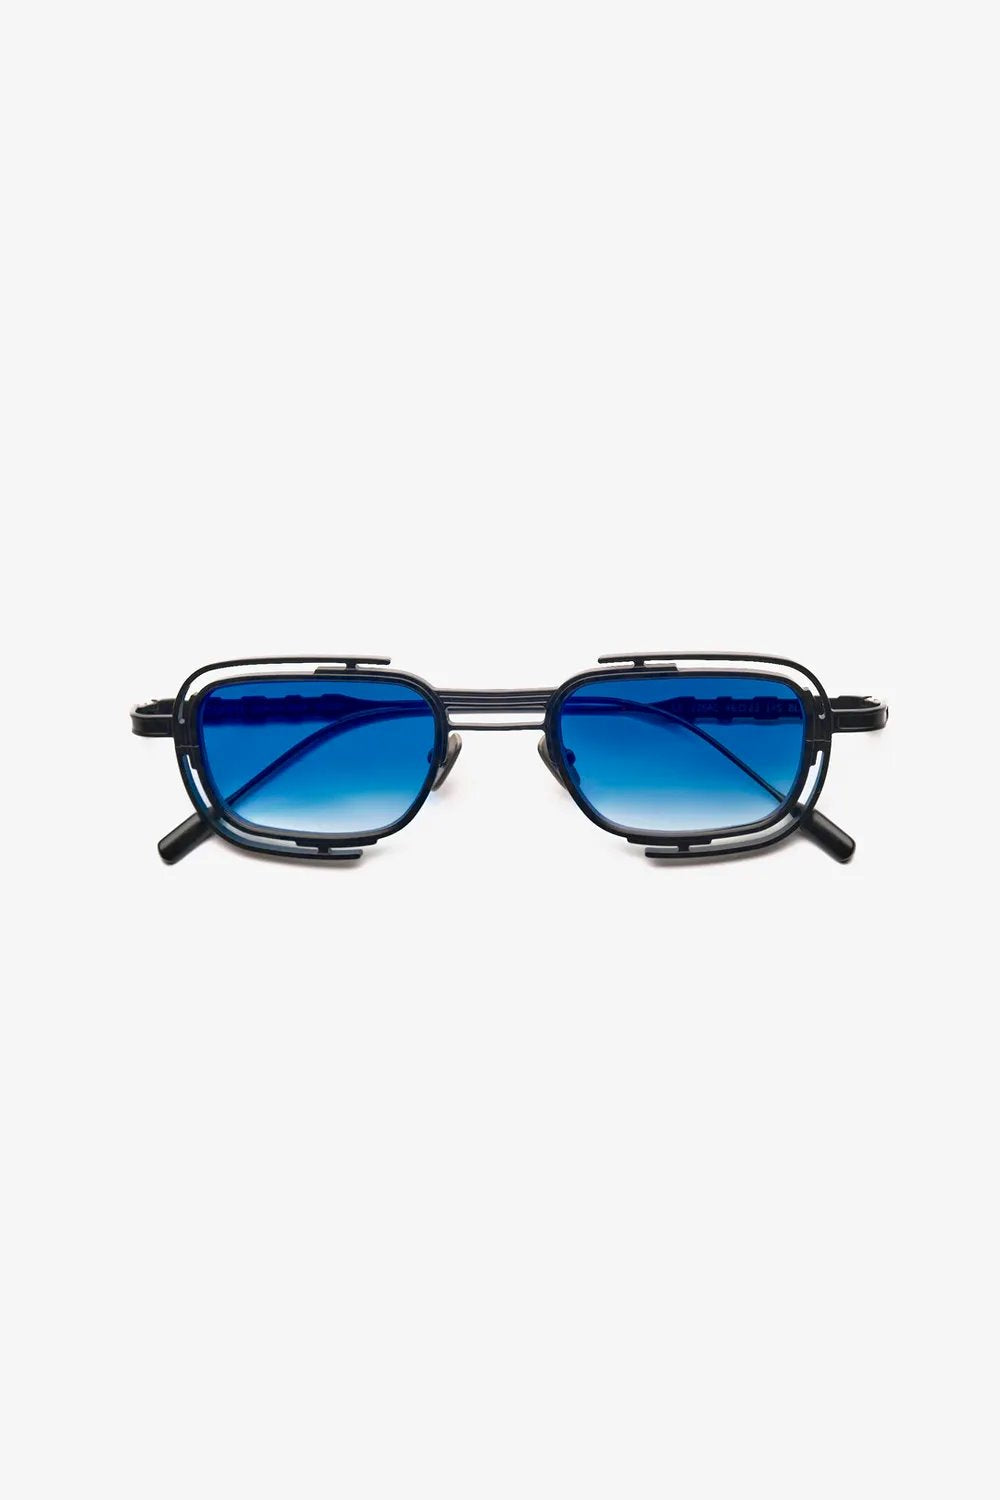 Capote - 226AC Sunglasses Capote Blue ONES 